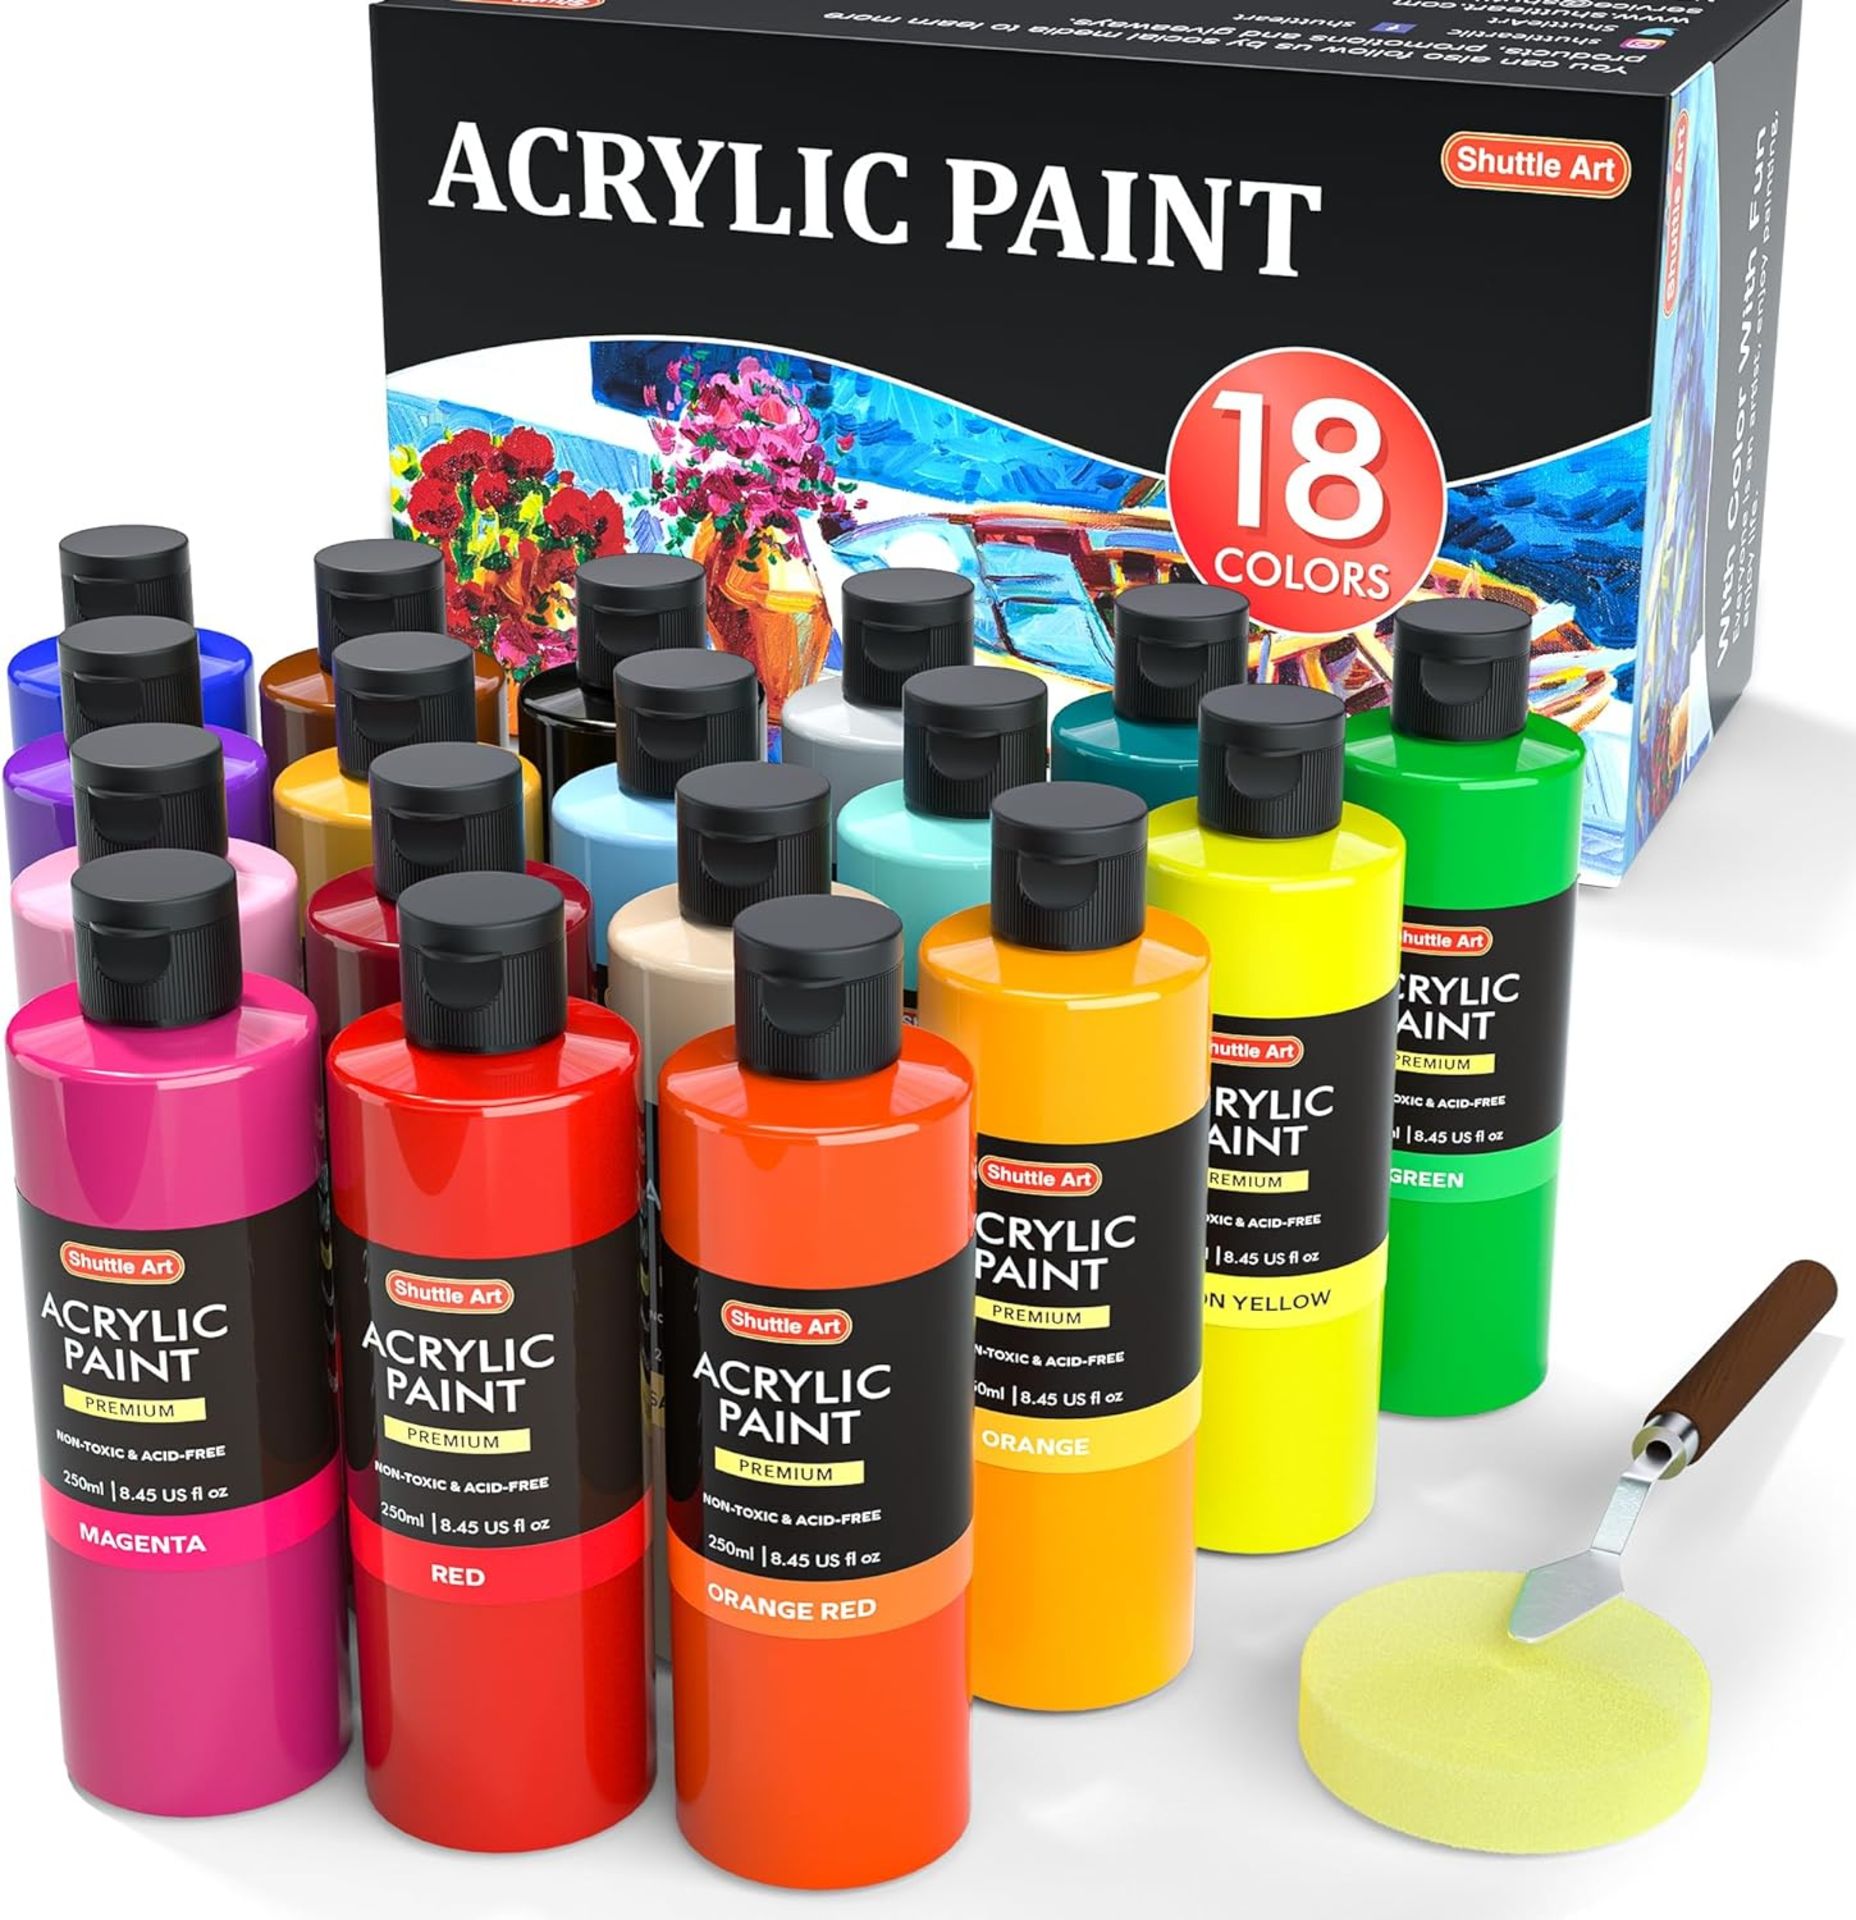 RRP £39.99 Shuttle Art Acrylic Paint, 18 Colours Acrylic Paint Bottle Set (250ml/8.45oz), Rich